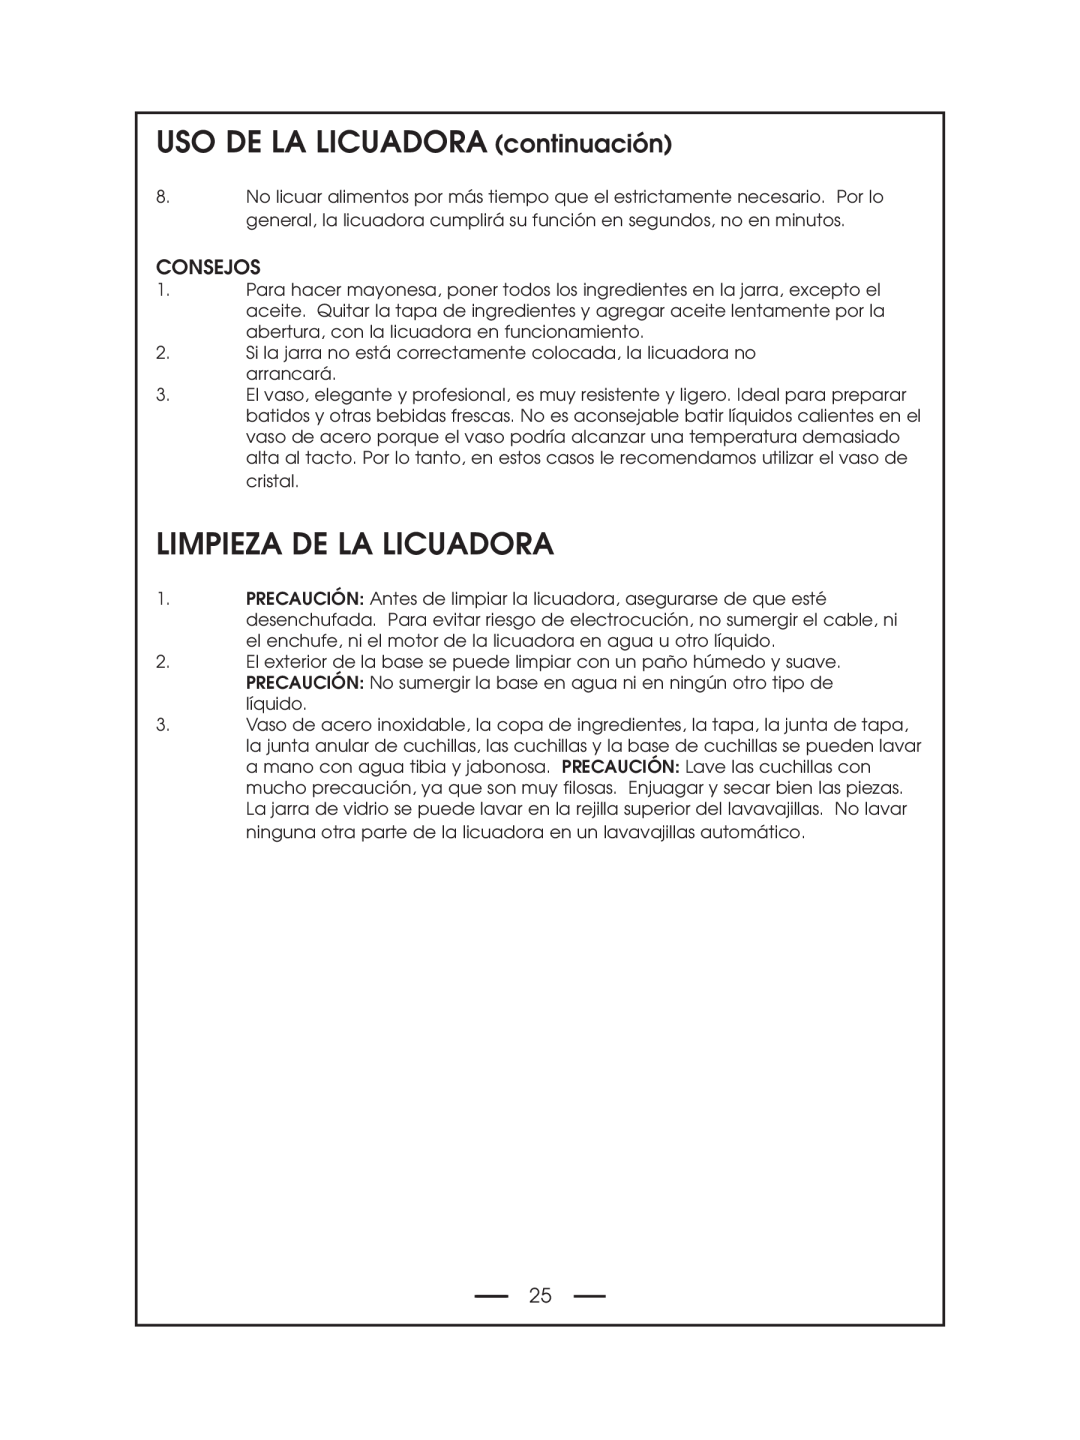 DeLonghi DBL750 Series instruction manual Limpieza De La Licuadora, USO DE LA LICUADORA continuación, Consejos 